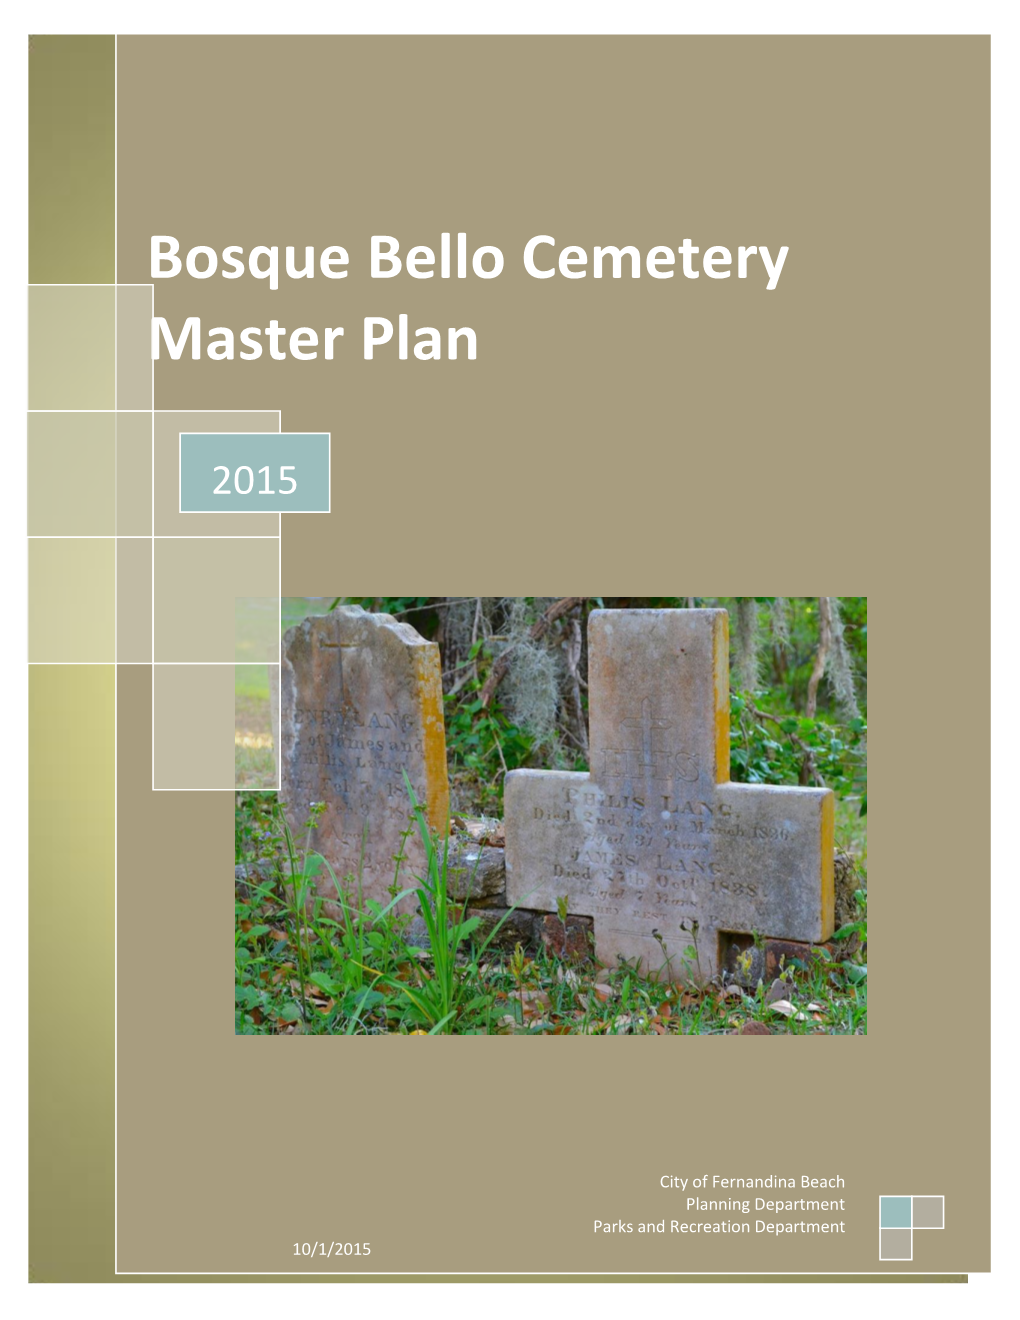 Bosque Bello Cemetery Master Plan